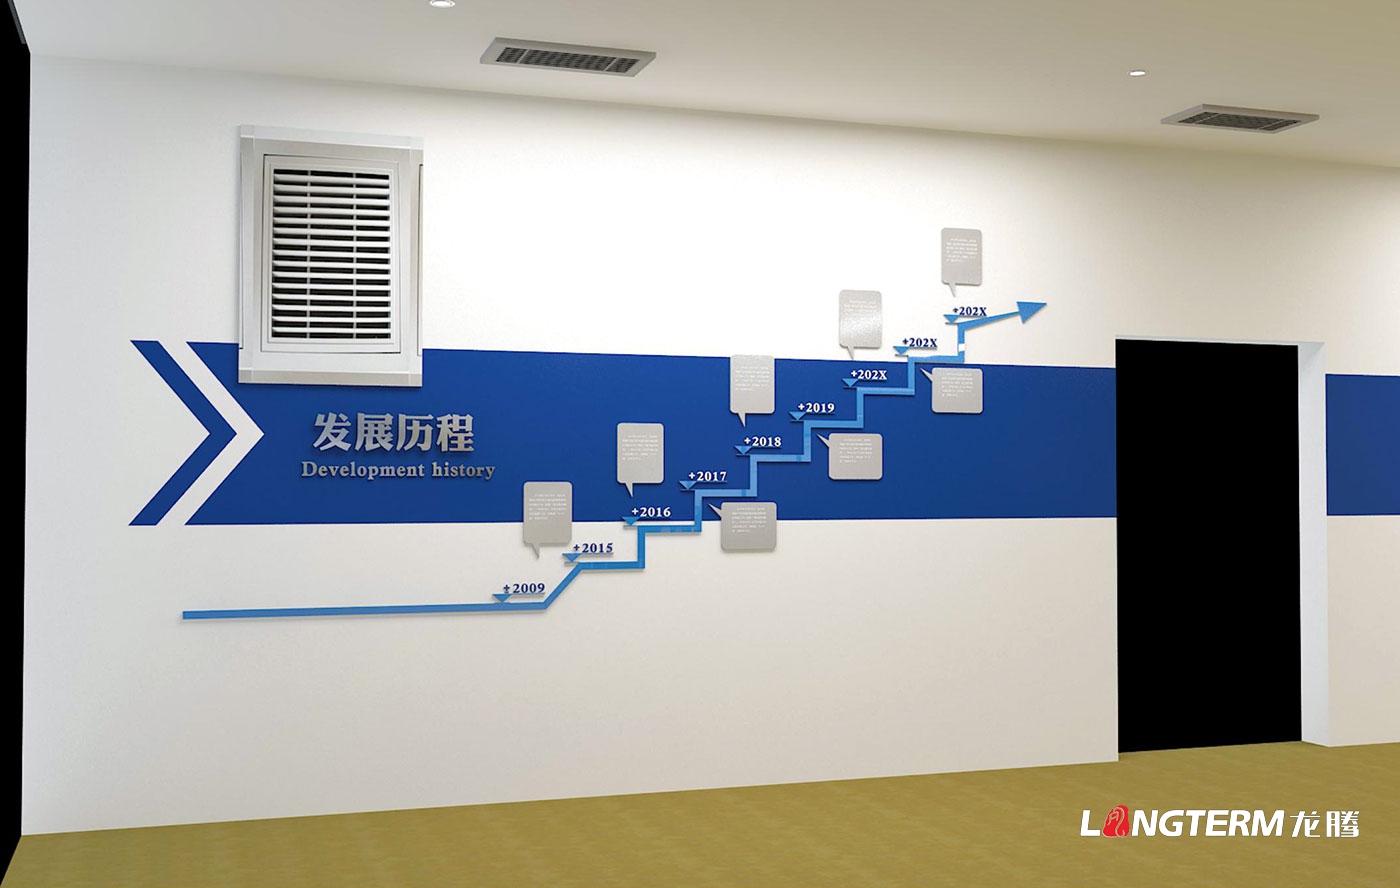 蓝光BRC办公室文化氛围营造设计方案_企业文化墙设计效果图